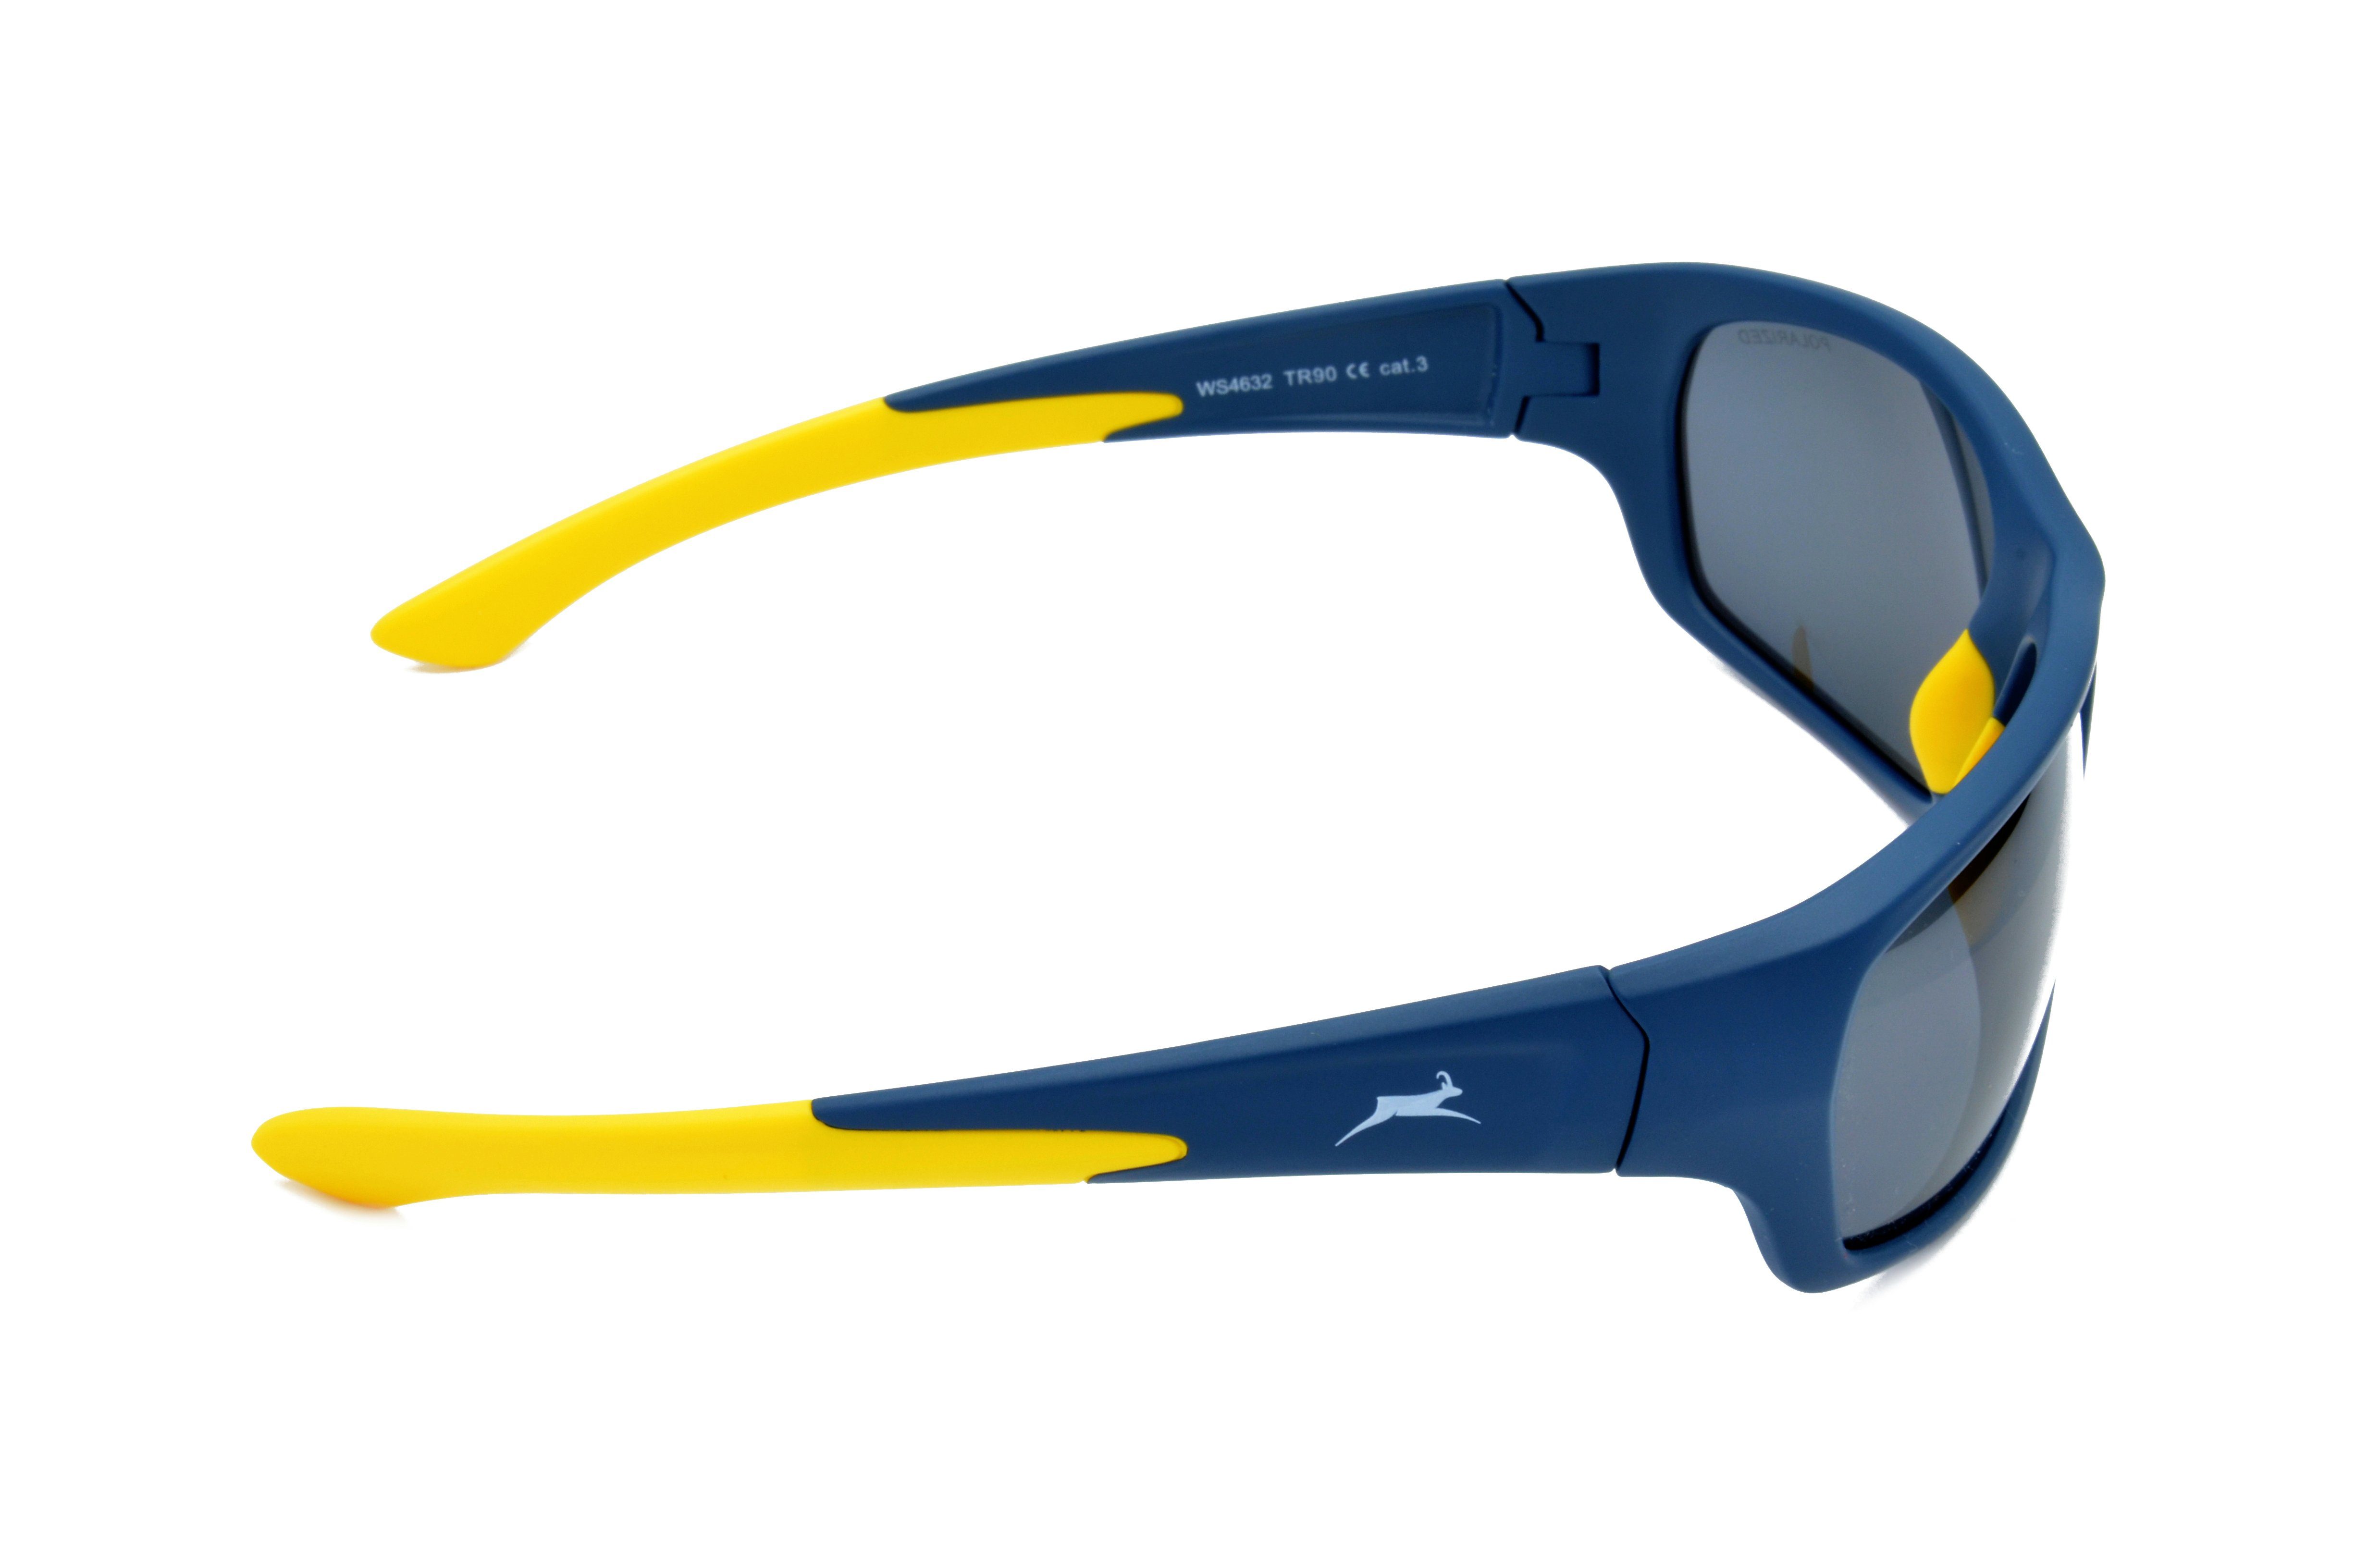 Gamswild WS4632 Skibrille Unisex blau-grau polarisiert, Sonnenbrille Sportbrille amber, Herren Damen beere-pink, blau_grau TR90, schwarz-grün, Fahrradbrille